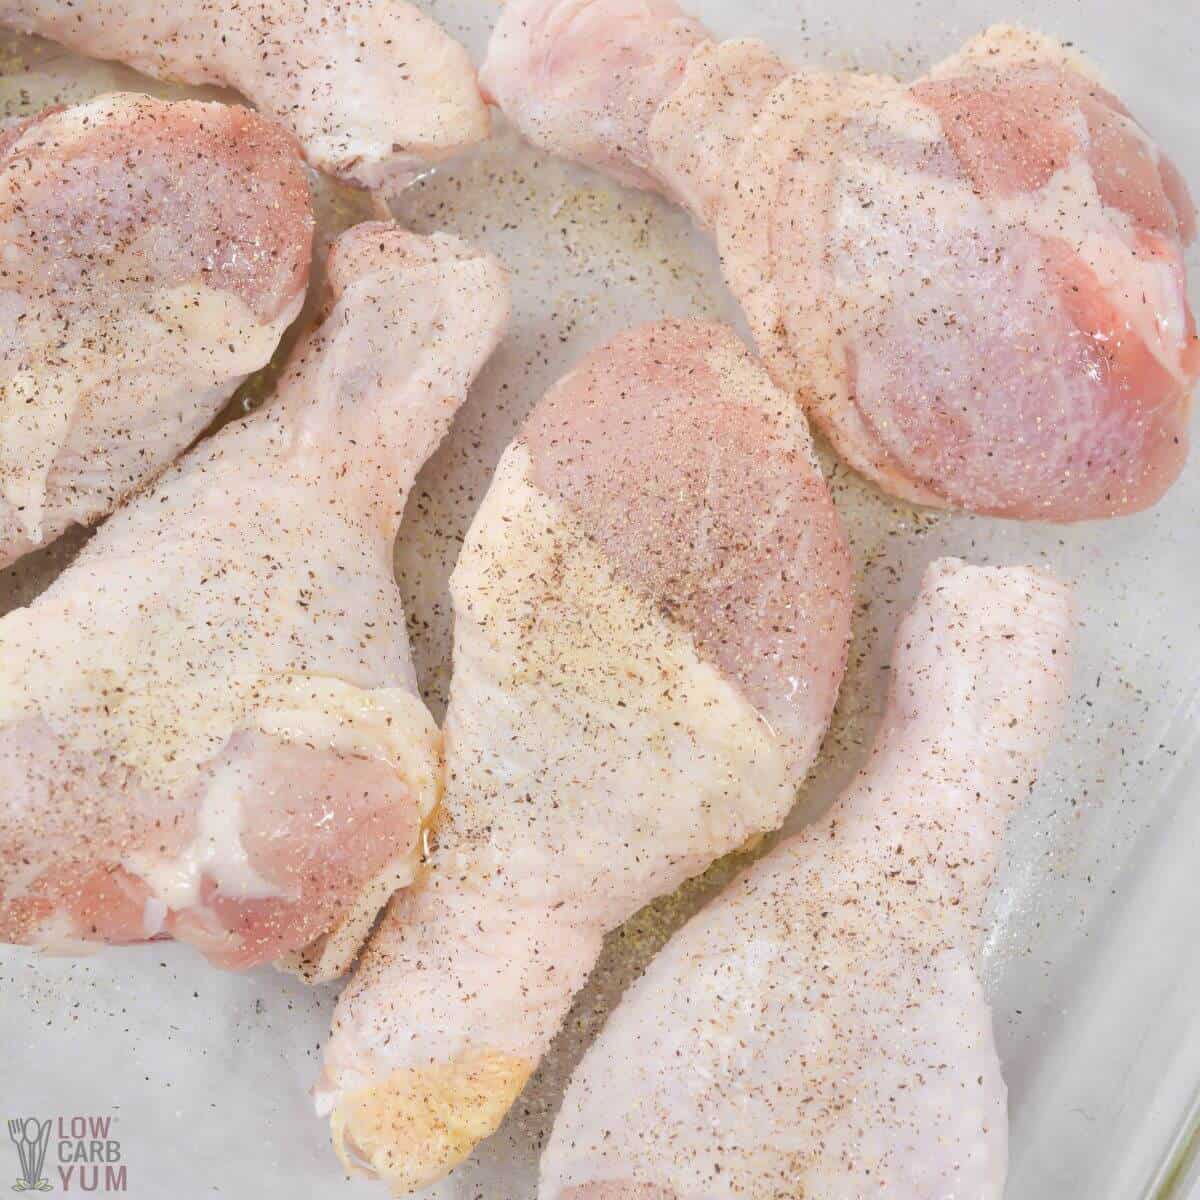 initial seasonings added to chicken legs.